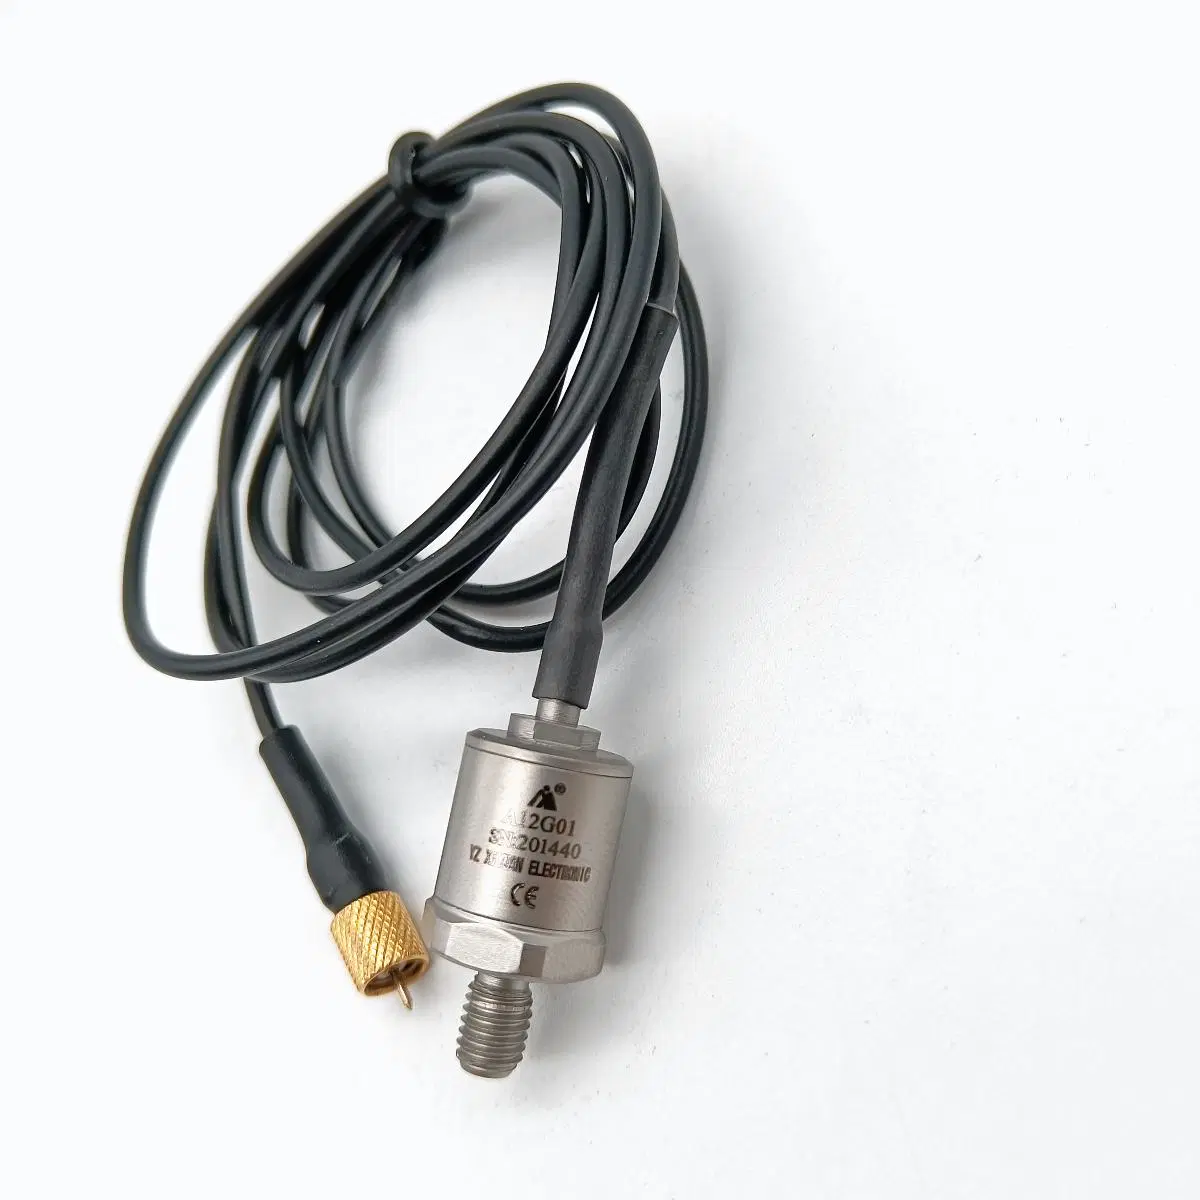 Customizable Customized Xiyuan High Sensitivity Mini Piezoelectric Accelerometer Acceleration Sensor Transmitter (A12G01)